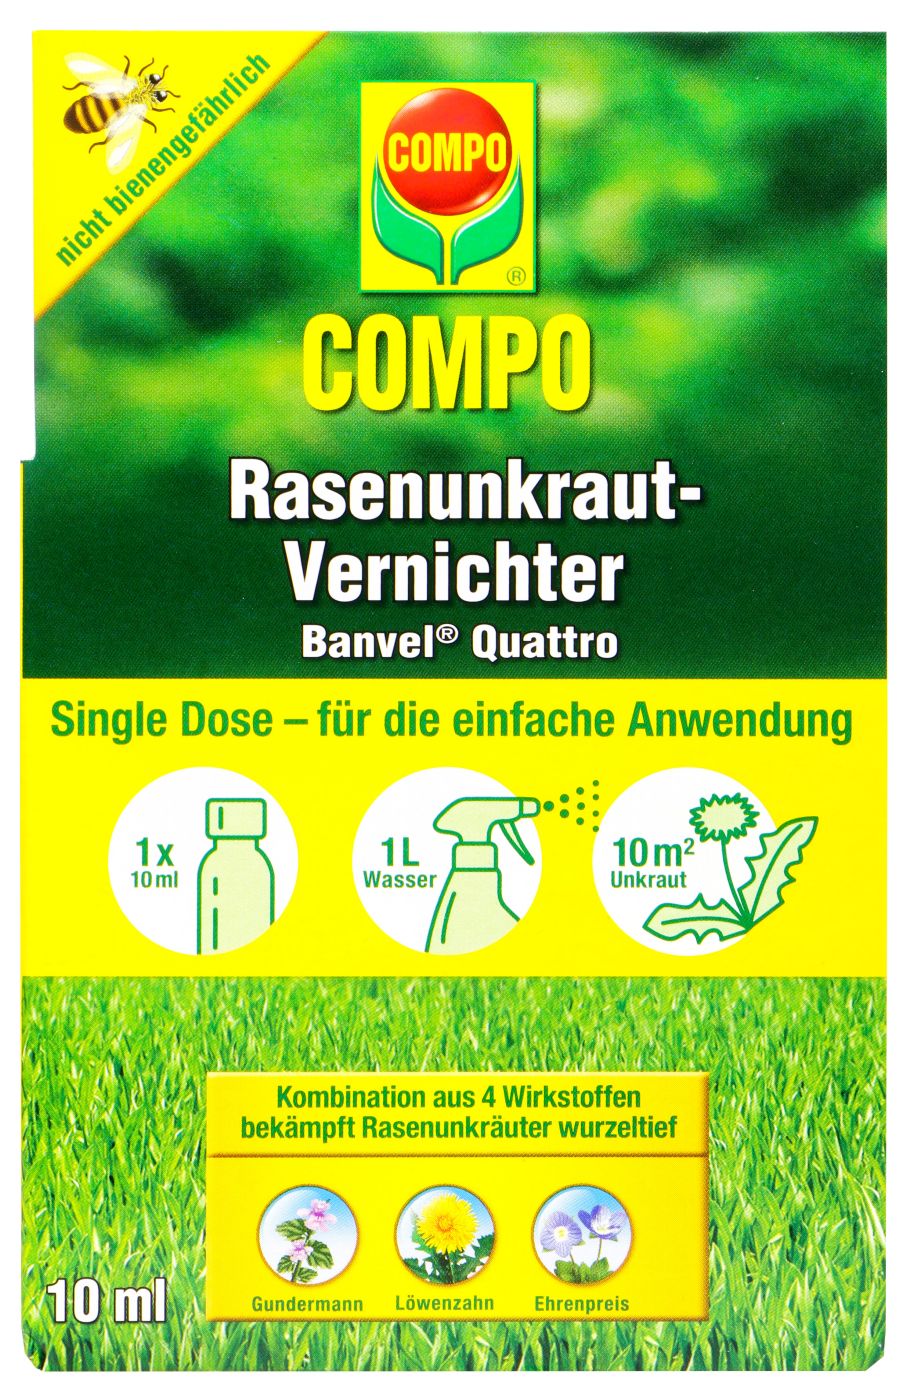 Compo Rasenunkraut-Vernichter Banvel Quattro - 10 ml